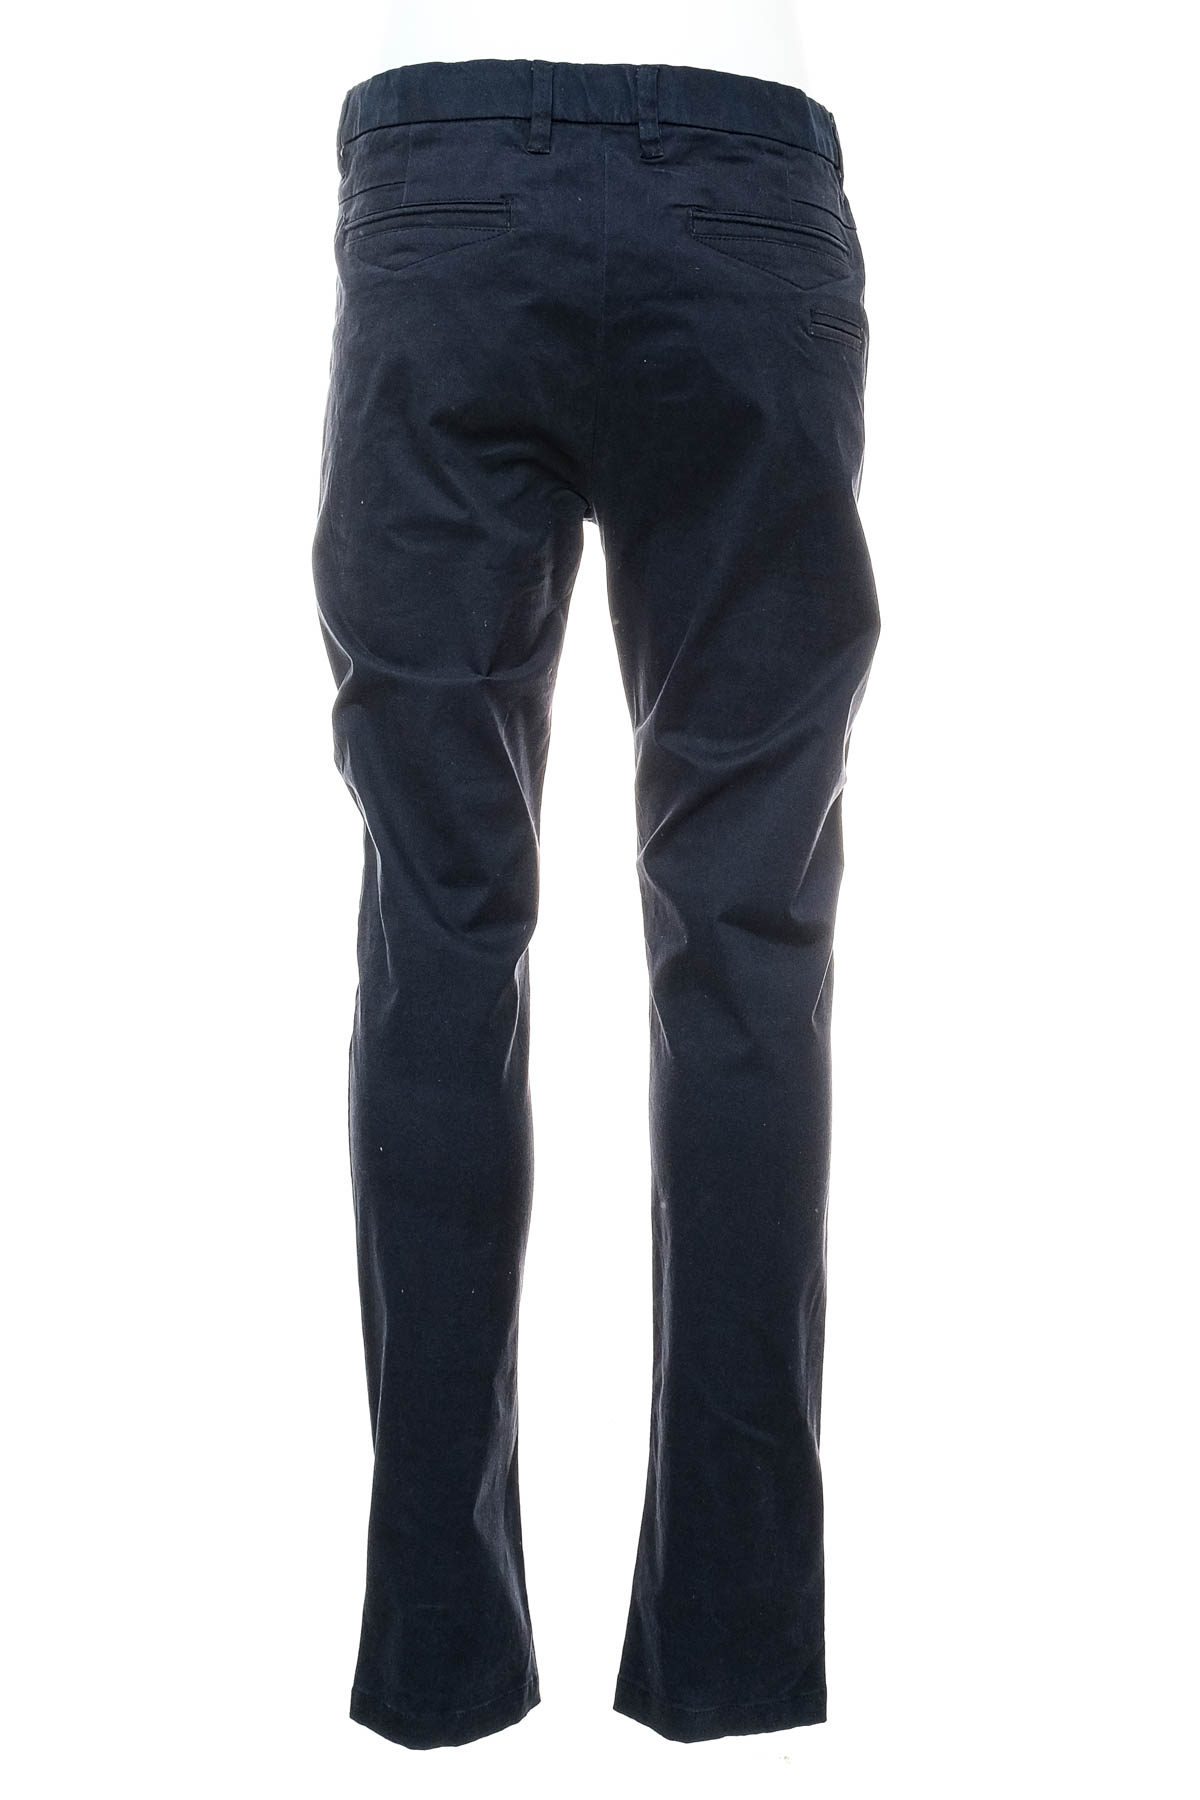 Men's trousers - Tailor & Son - 1